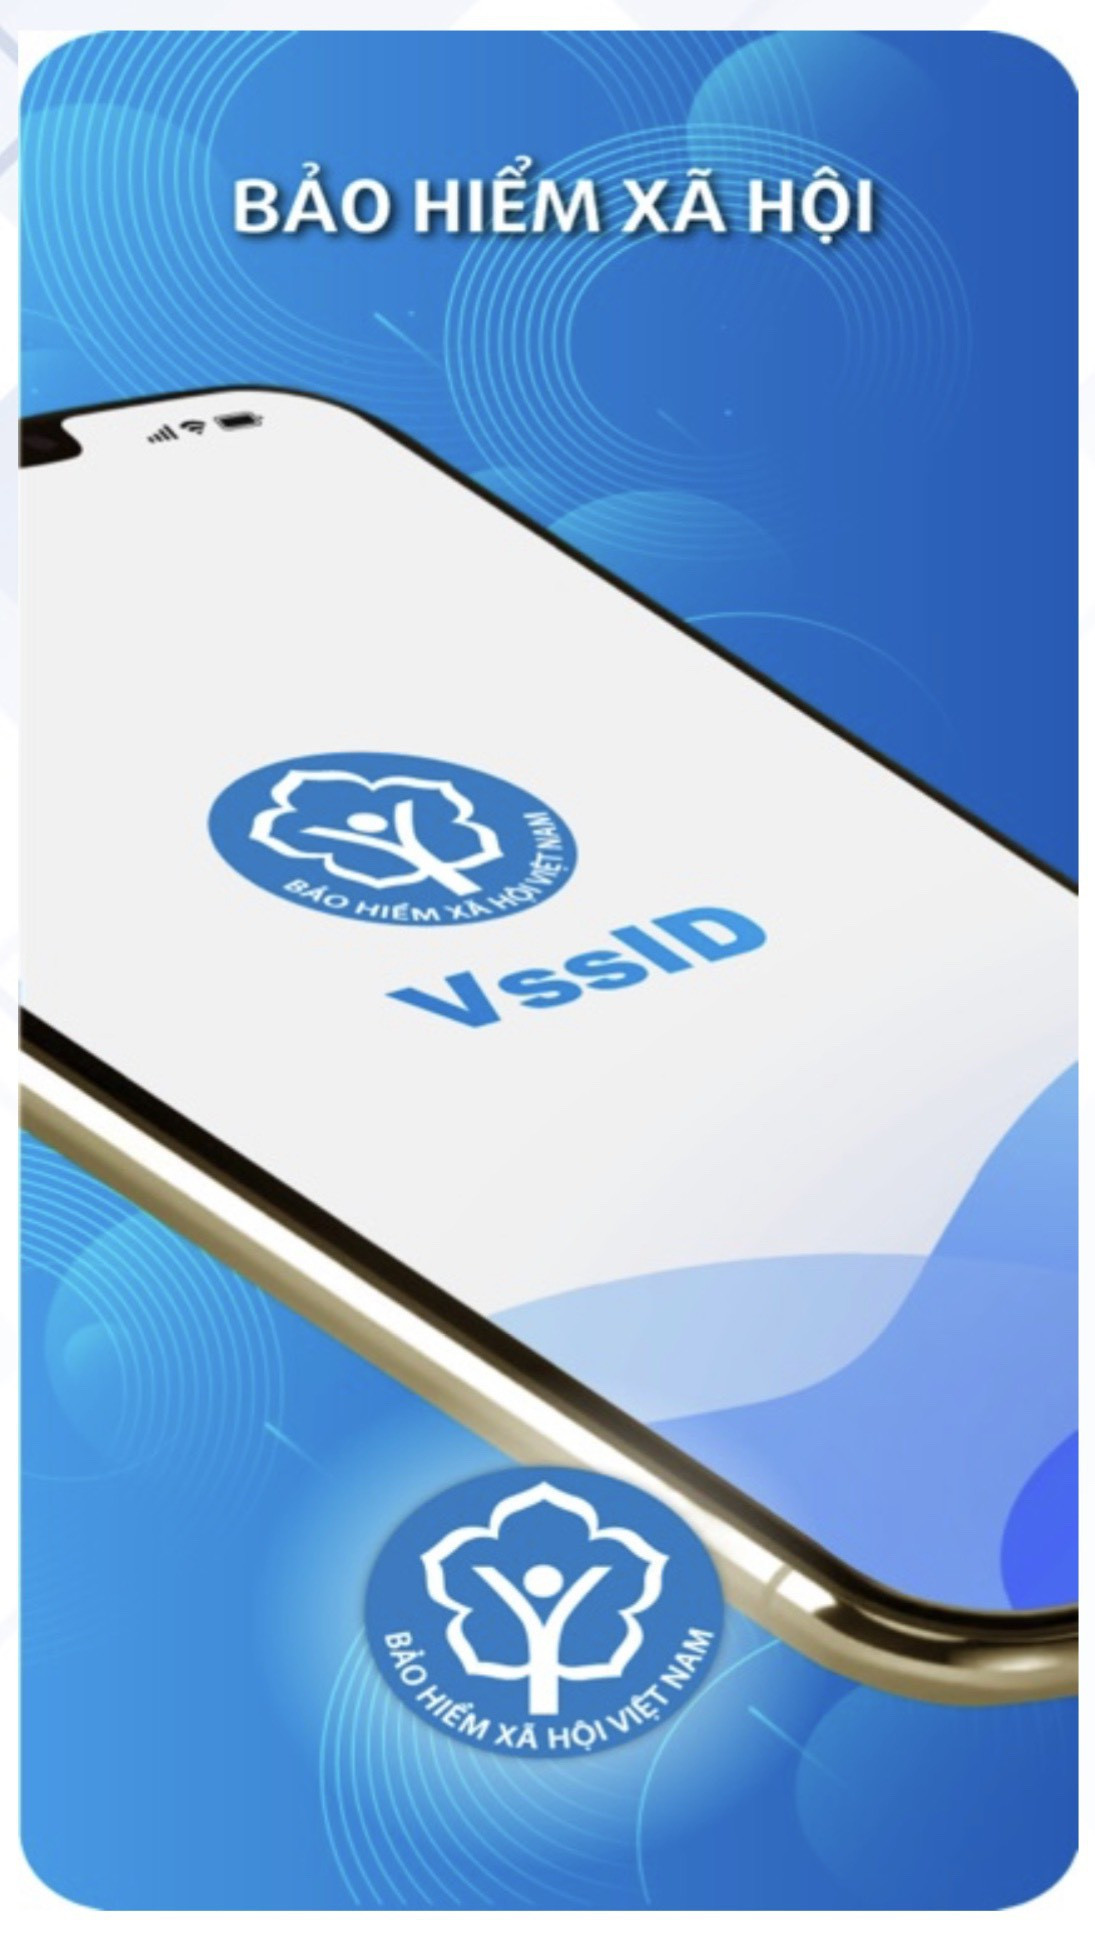 Ứng dụng VssID cài đặt dễ dàng, tiện ích.